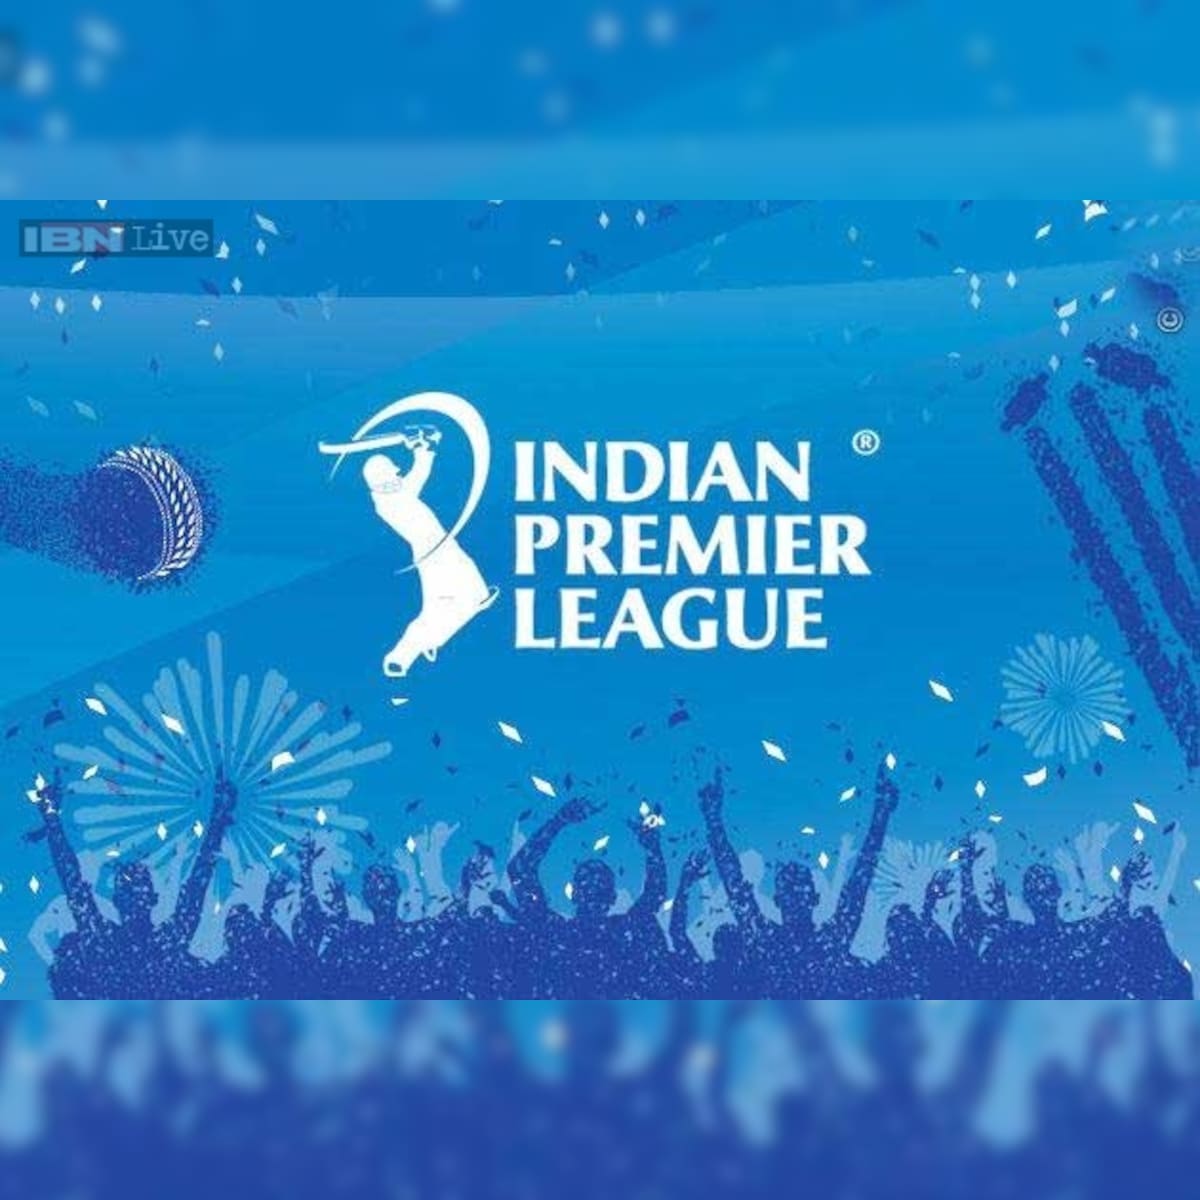 Elaborate security arrangements for IPL in Kolkata